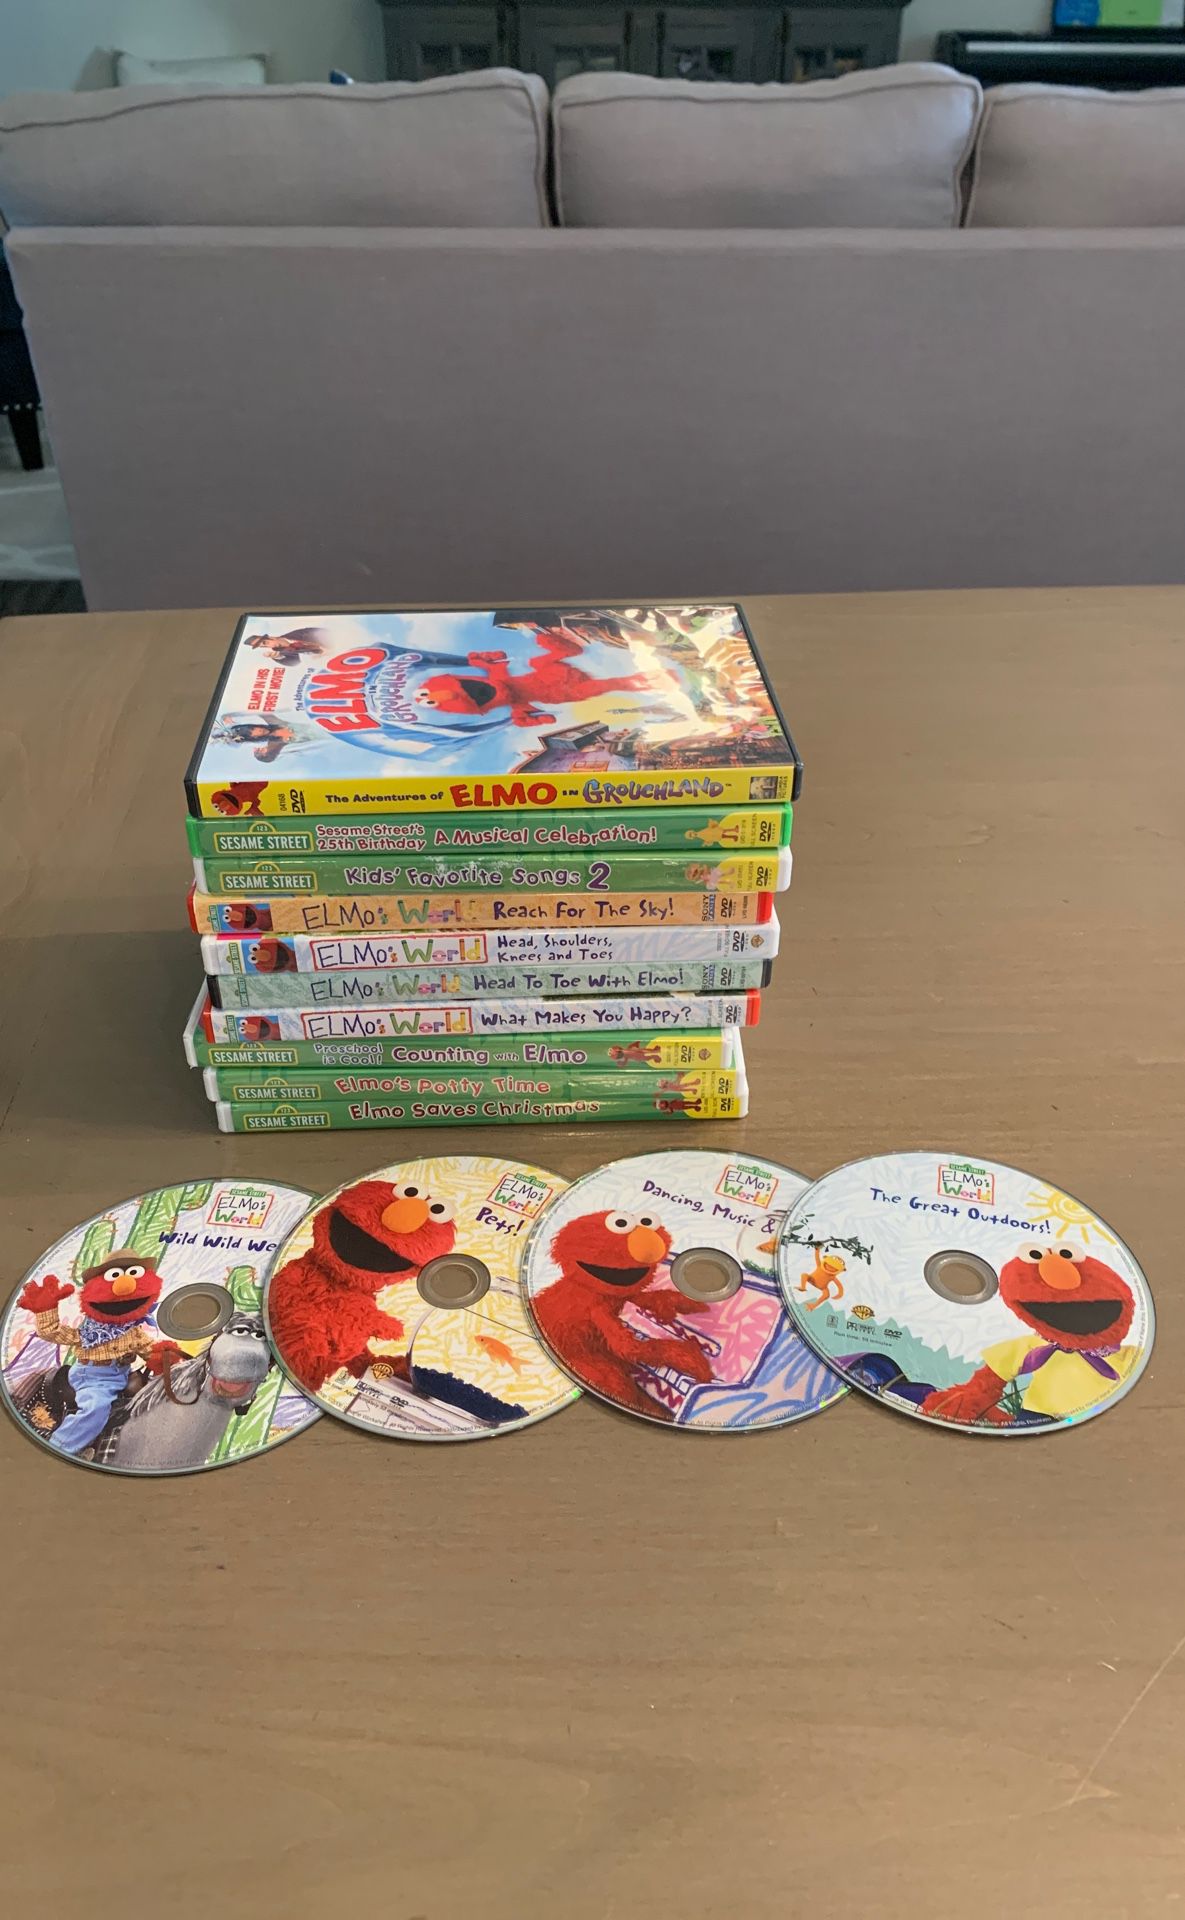 Elmo DVD collection